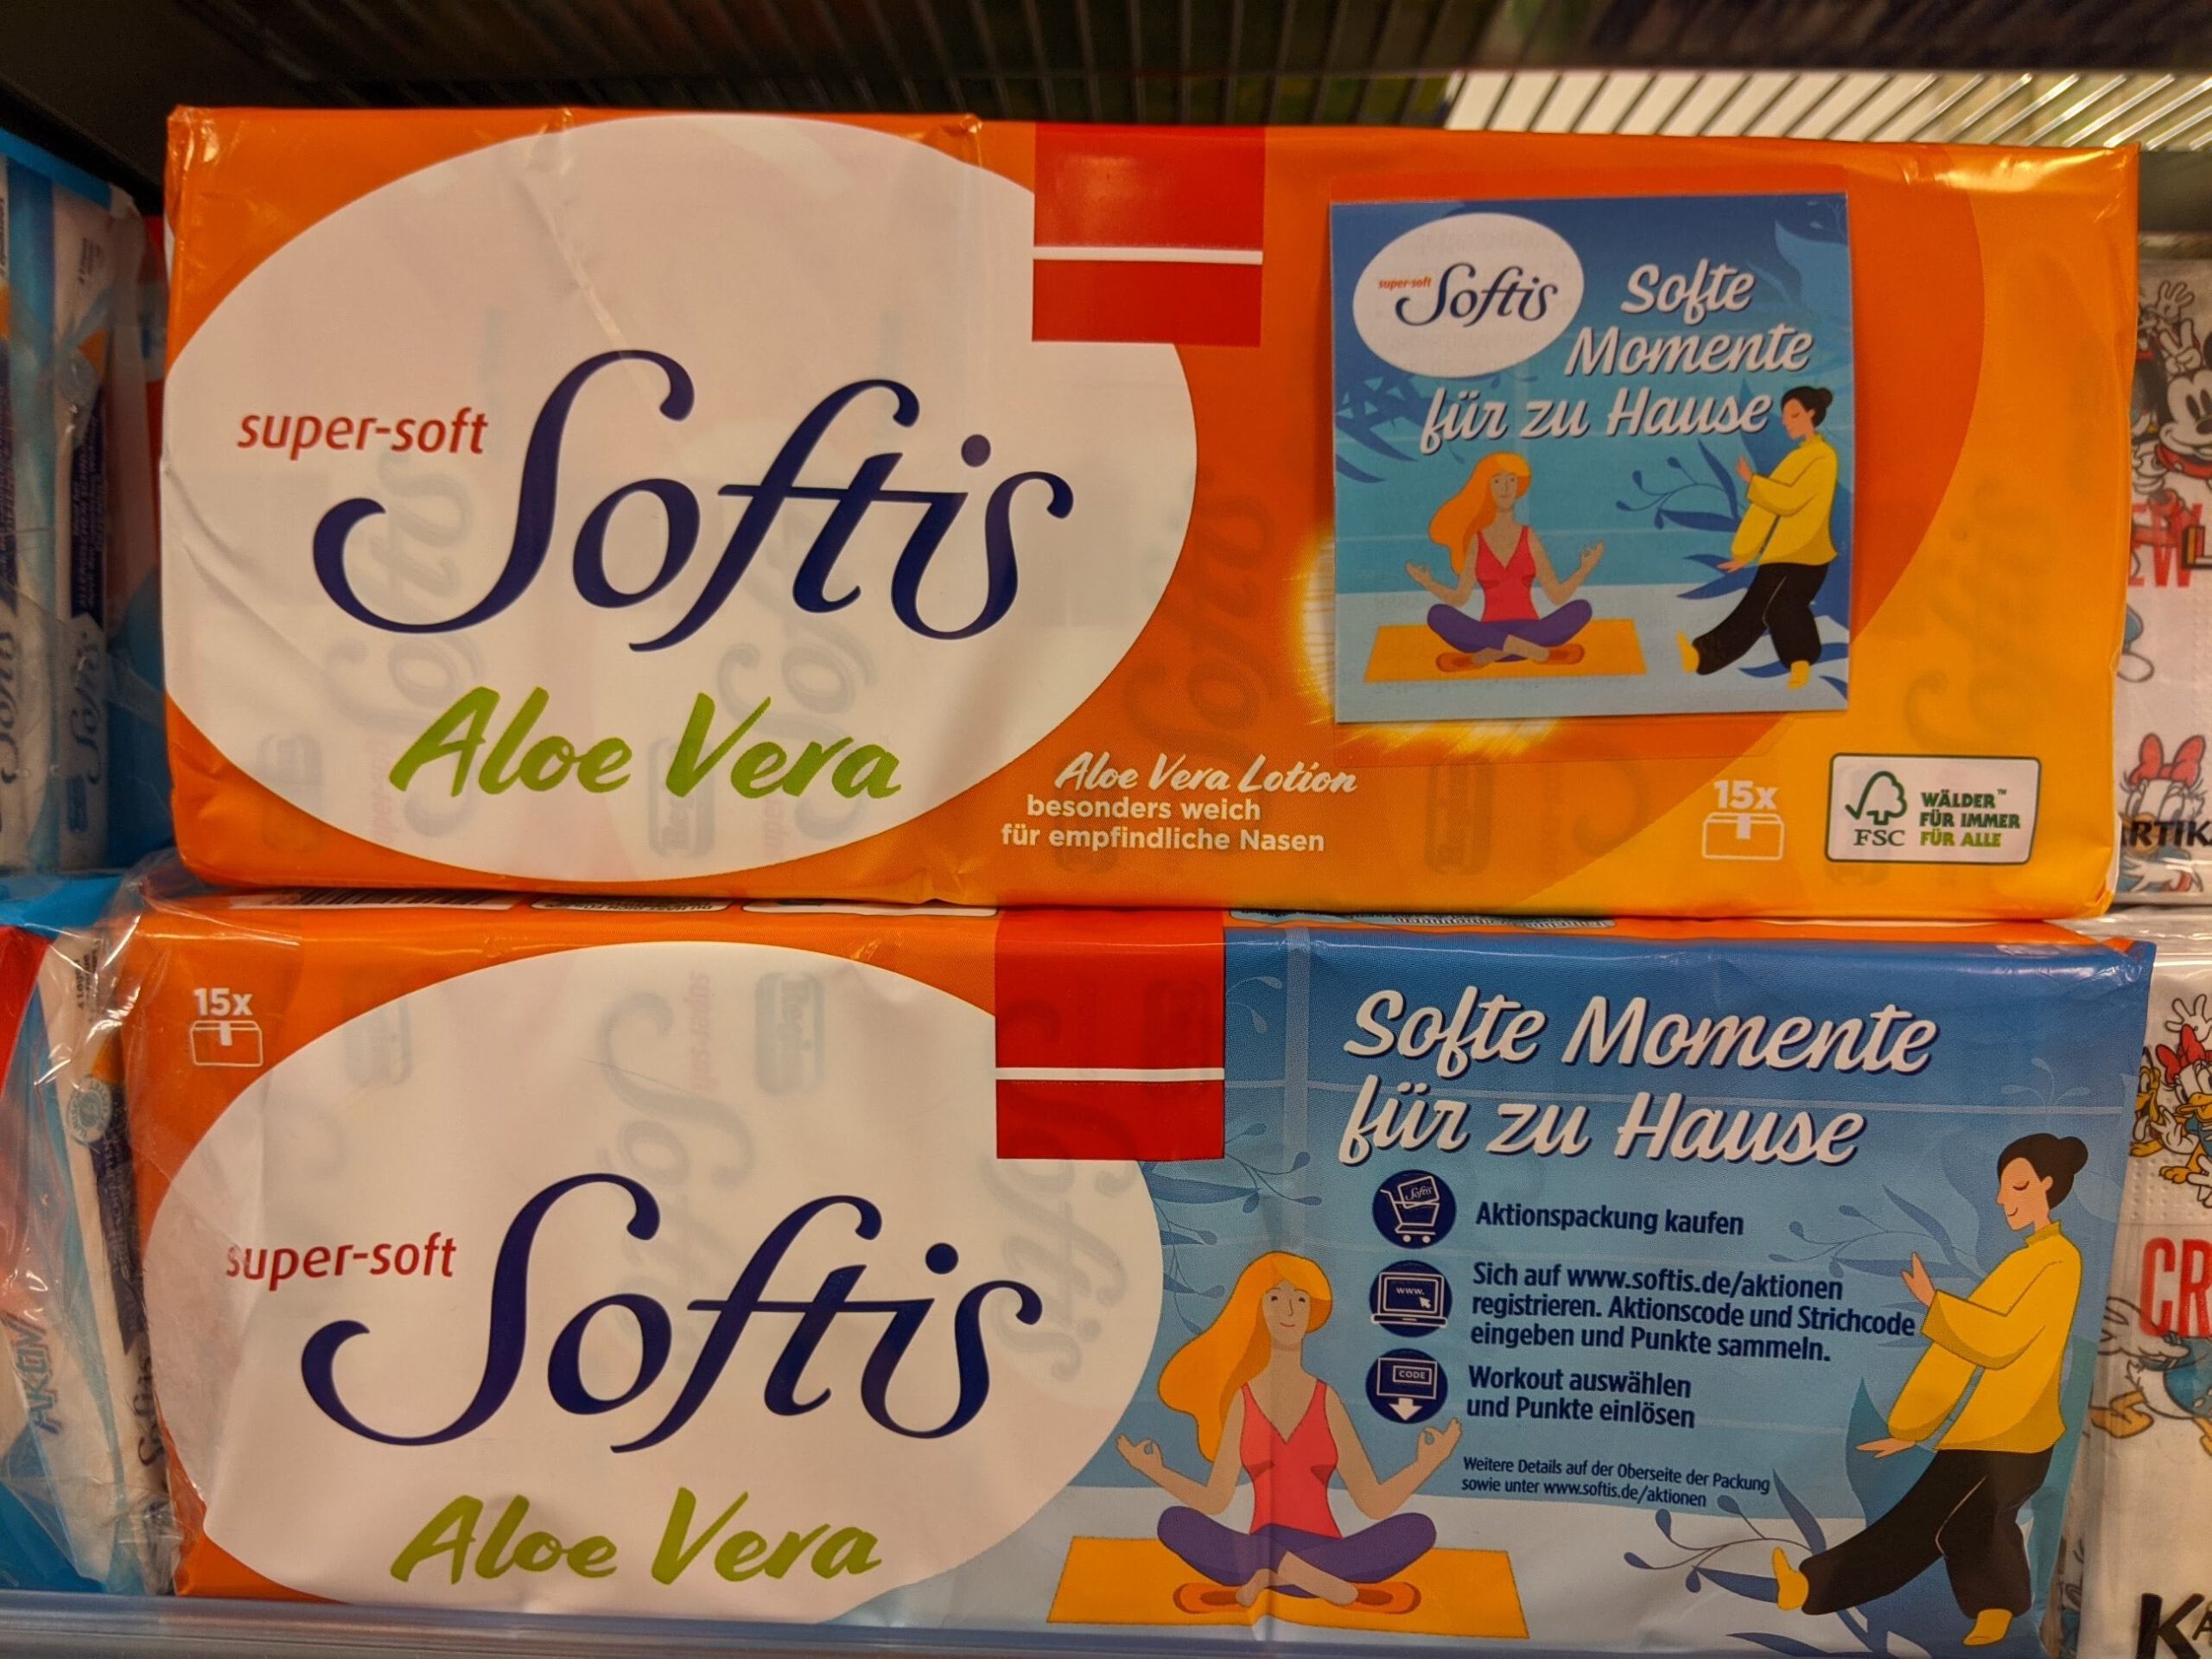 Softis: Softe Momente für Zuhause - Gratis Workout-Training